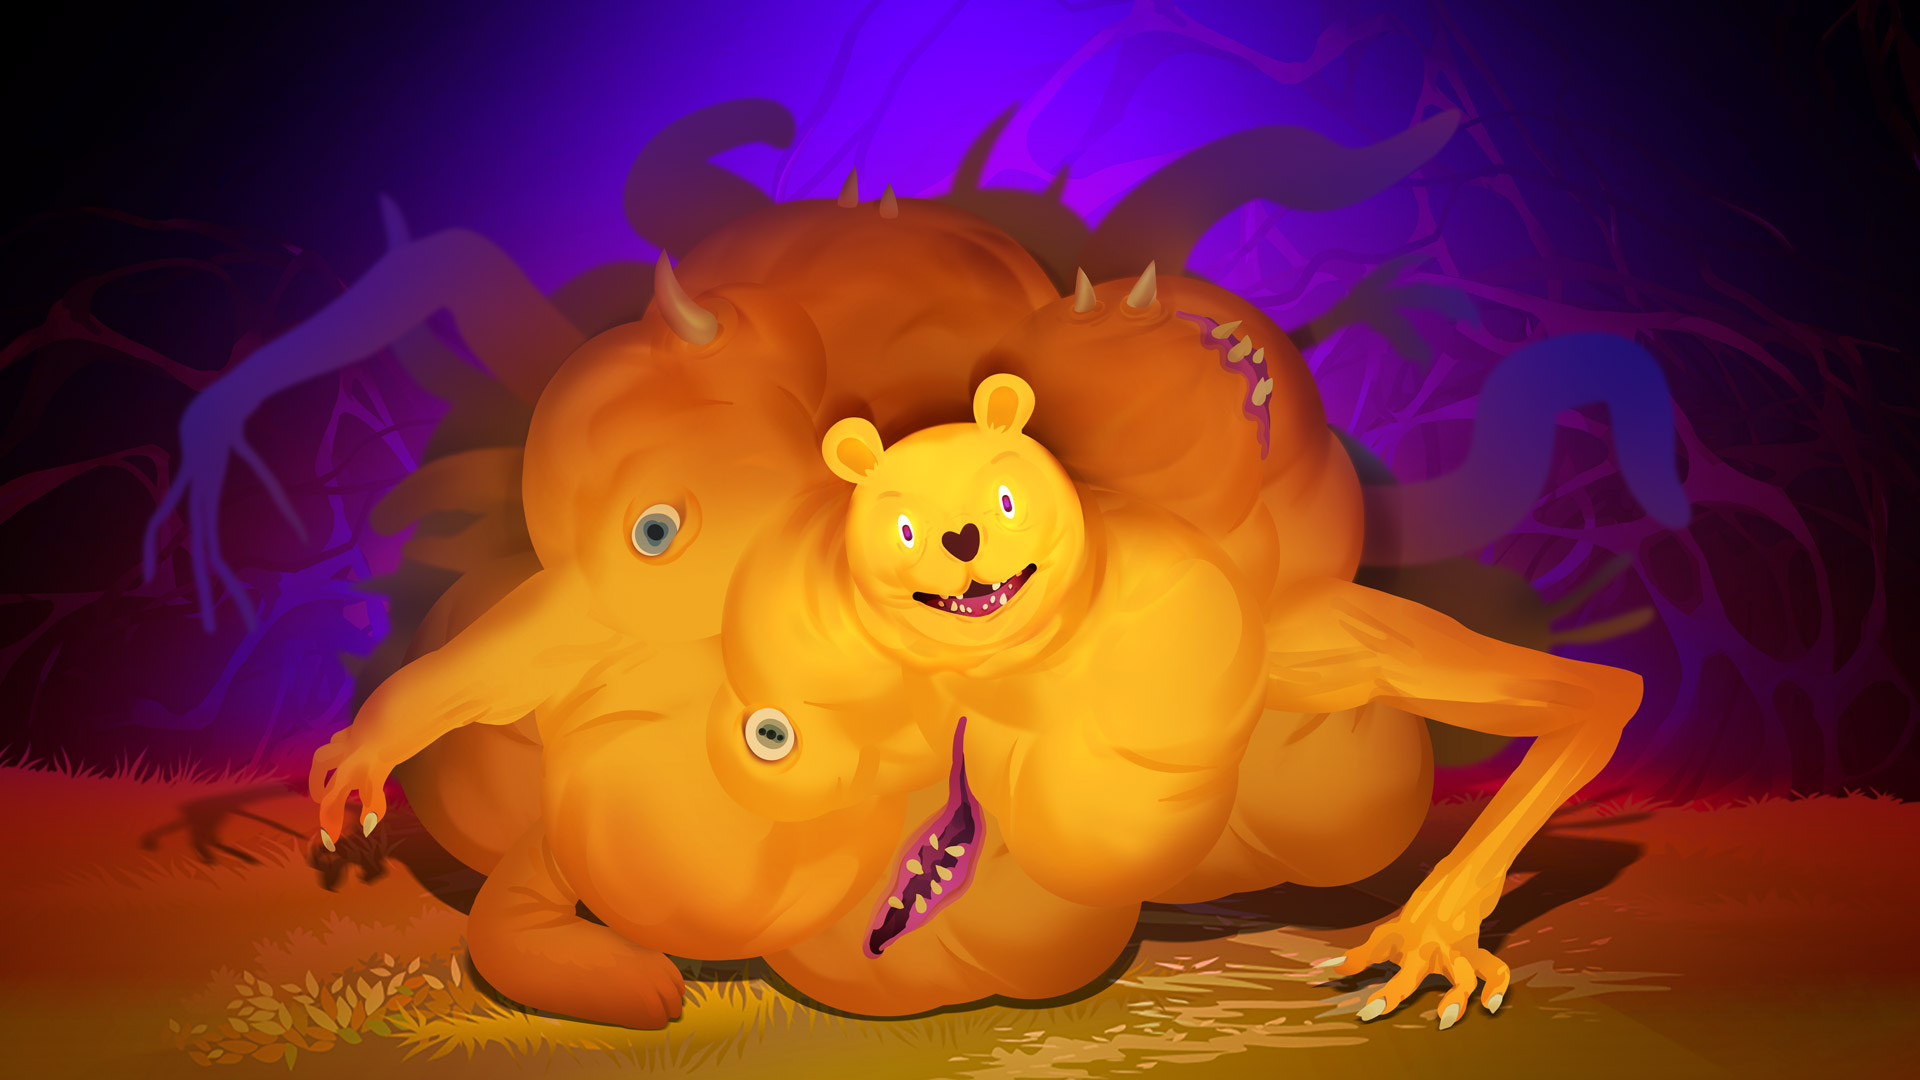 Winnie the Pooh’s Hole występuje w nowej grze od dewelopera Ring of Pain